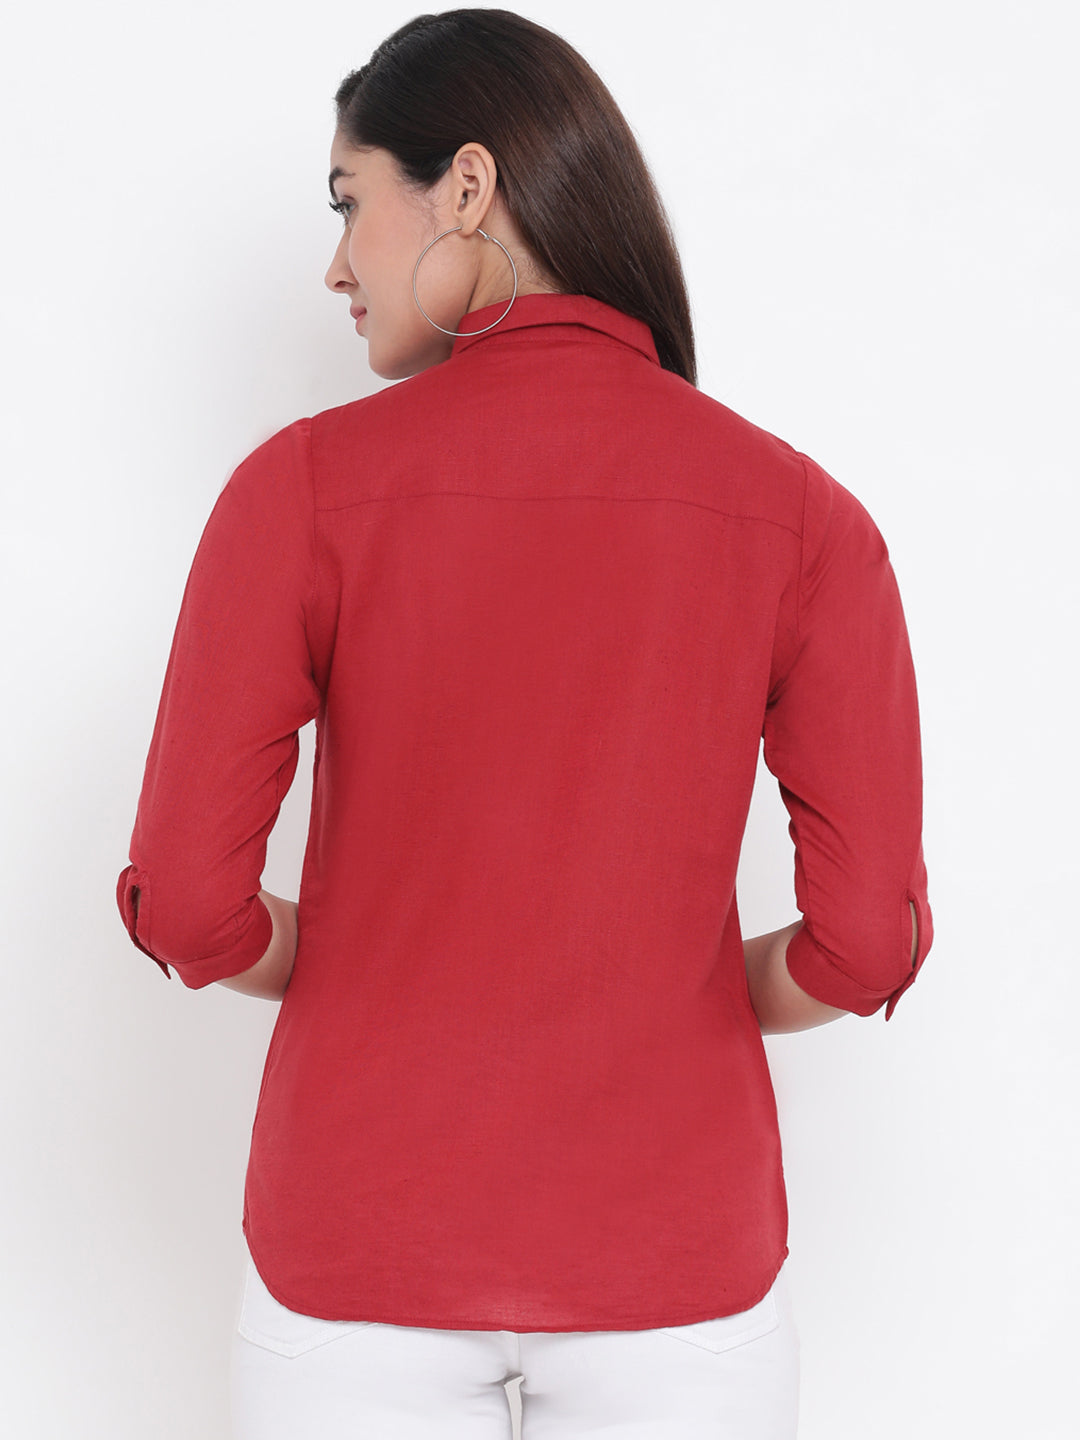 Red Linen Button up Shirt - Women Shirts